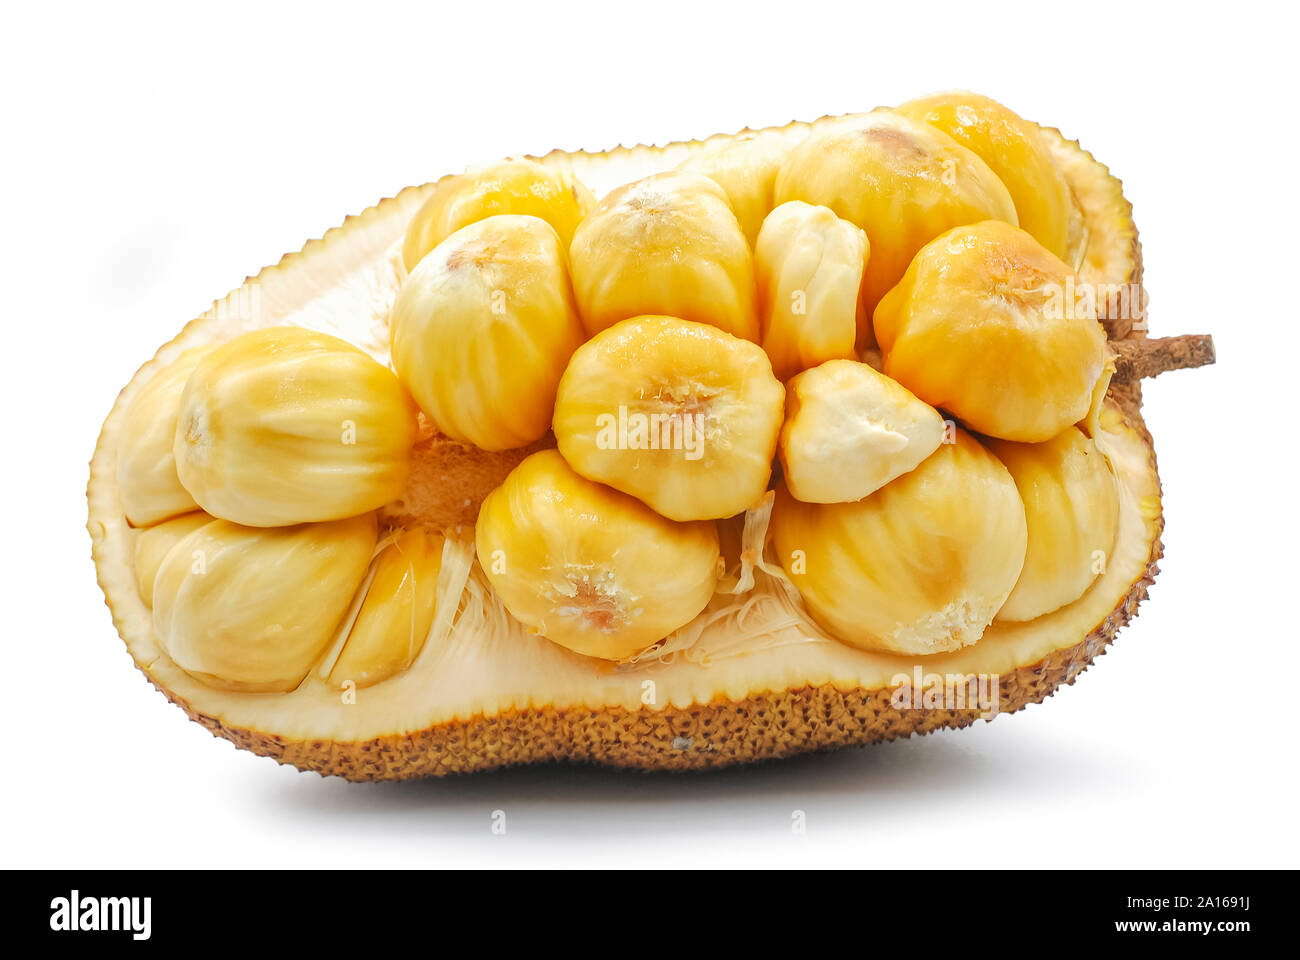 Fresh jackfruit isolated on white background Stock Photo